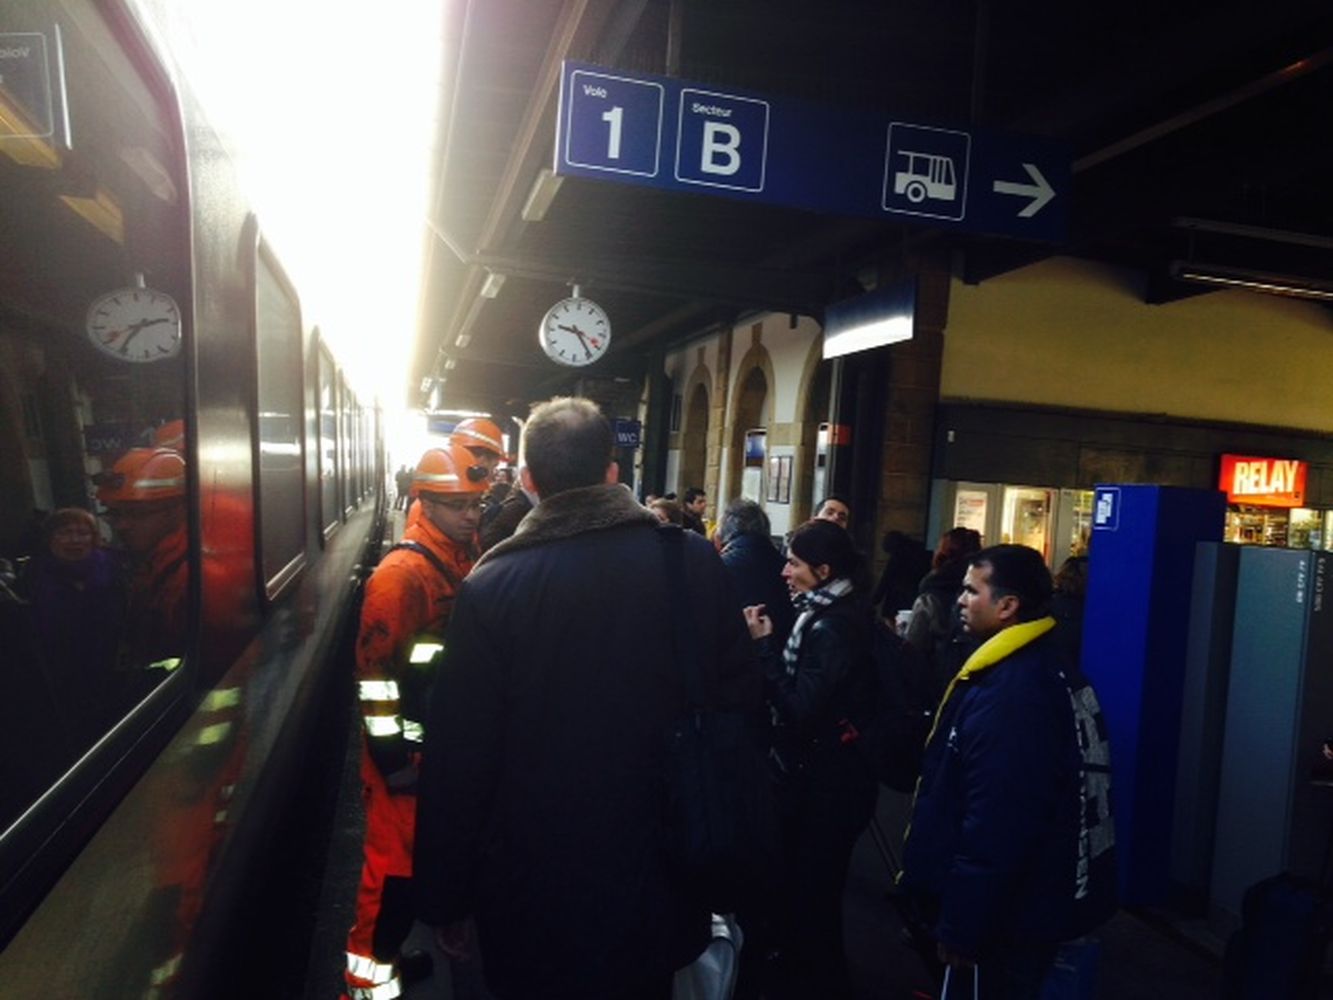 Des passagers en attente à la gare d'Yverdon vendredi matin.